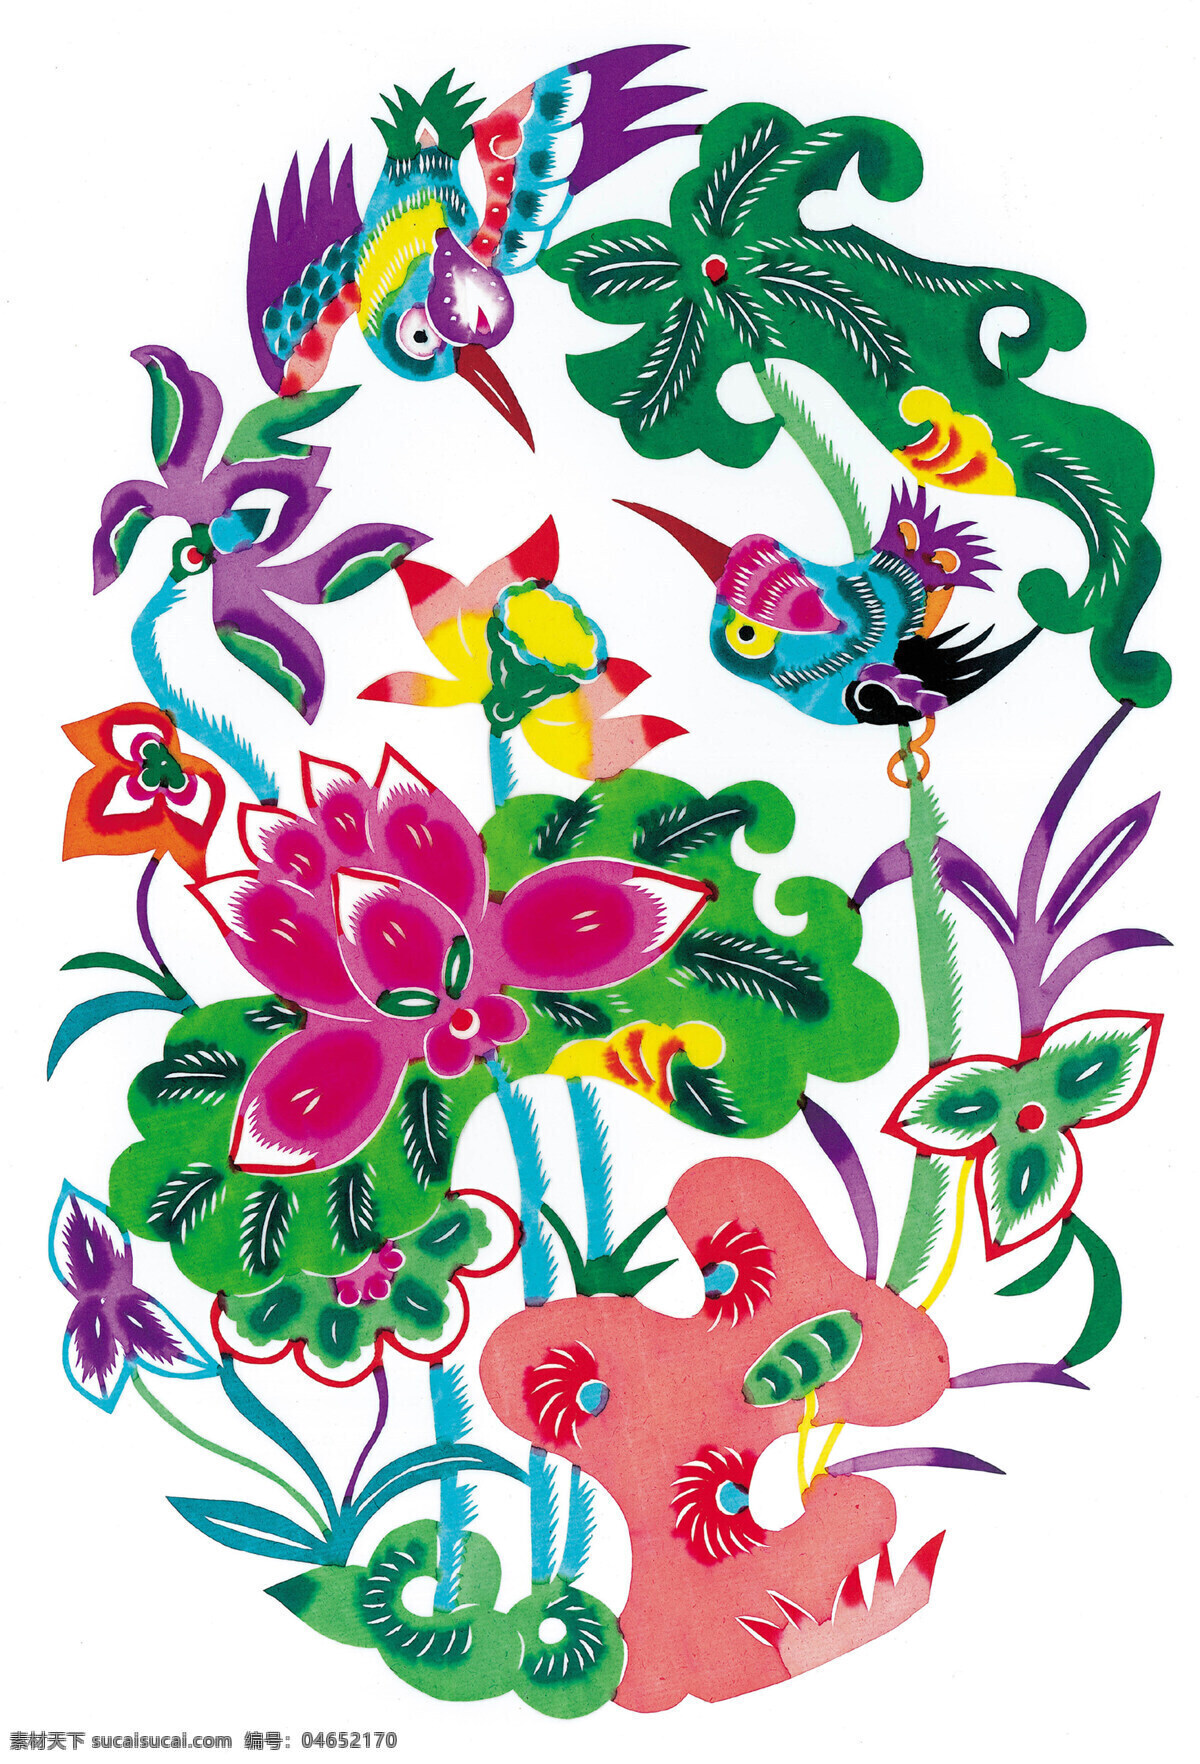 鸳鸯 荷花 剪纸 中国 风 古典 花纹 传统 图案 剪纸艺术 民间剪纸艺术 民间画 文化艺术